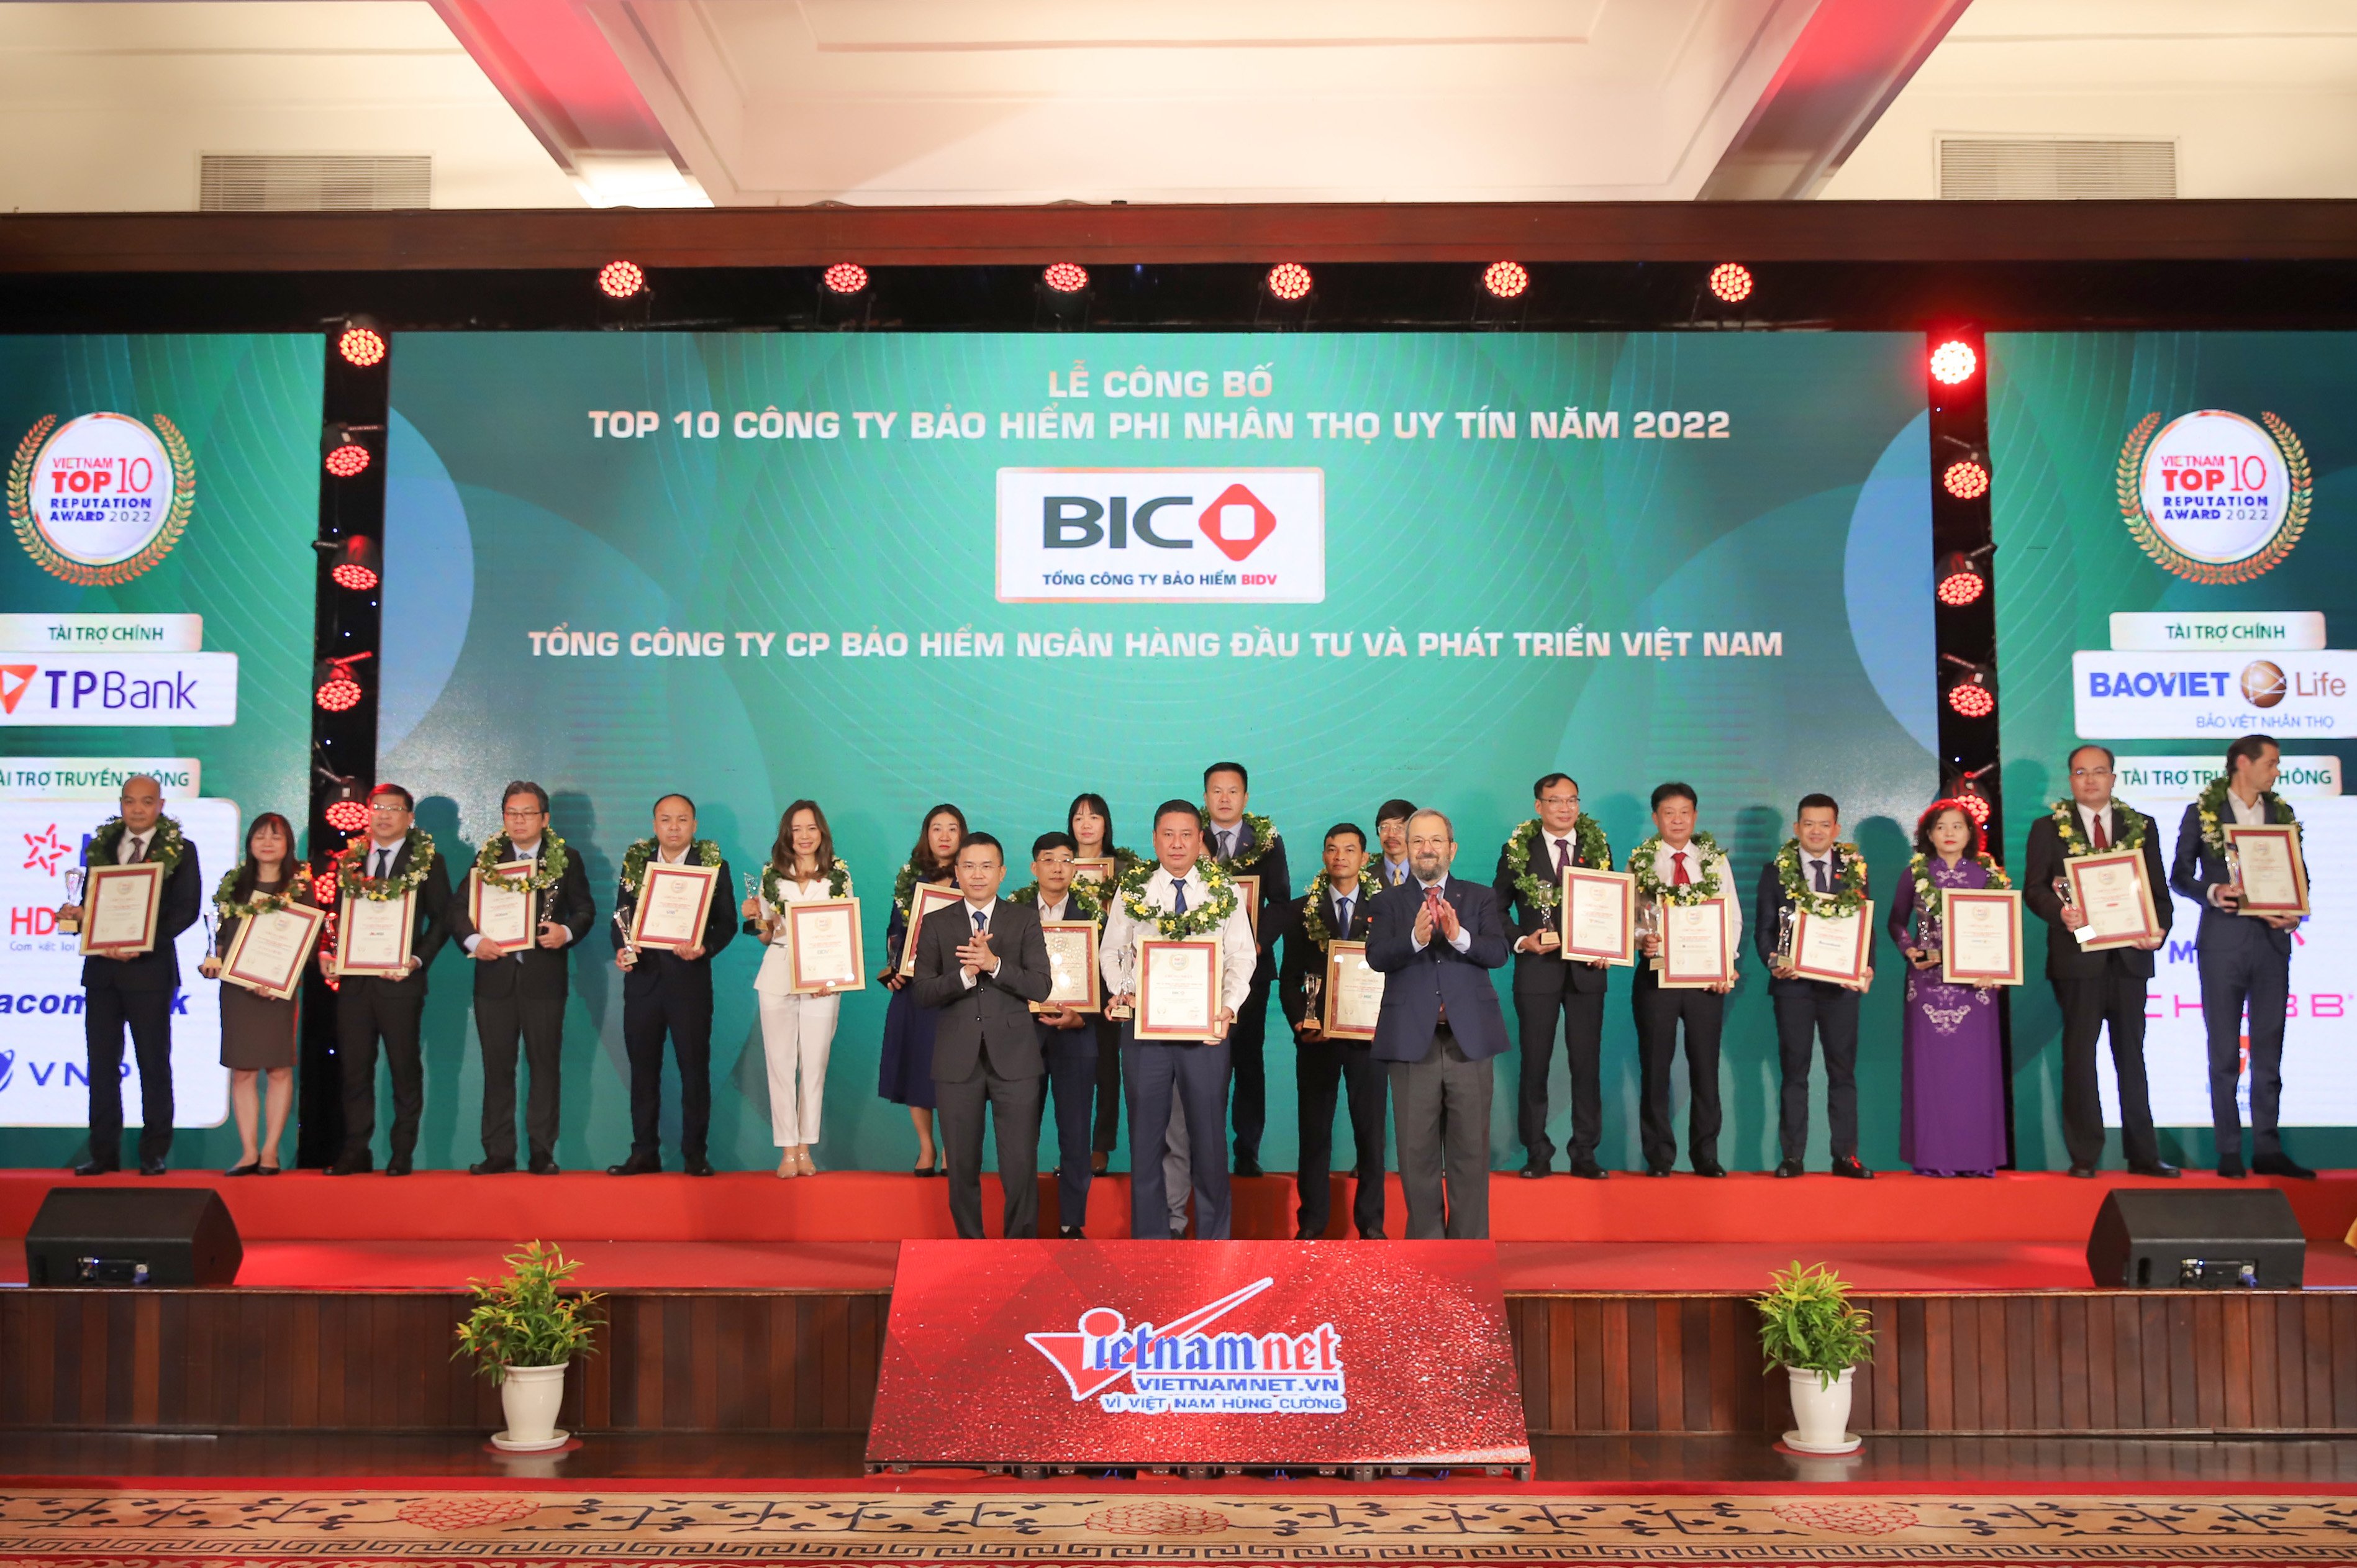 BIC là 1 trong 6 công ty bảo hiểm phi nhân thọ uy tín nhất Việt Nam năm 2022